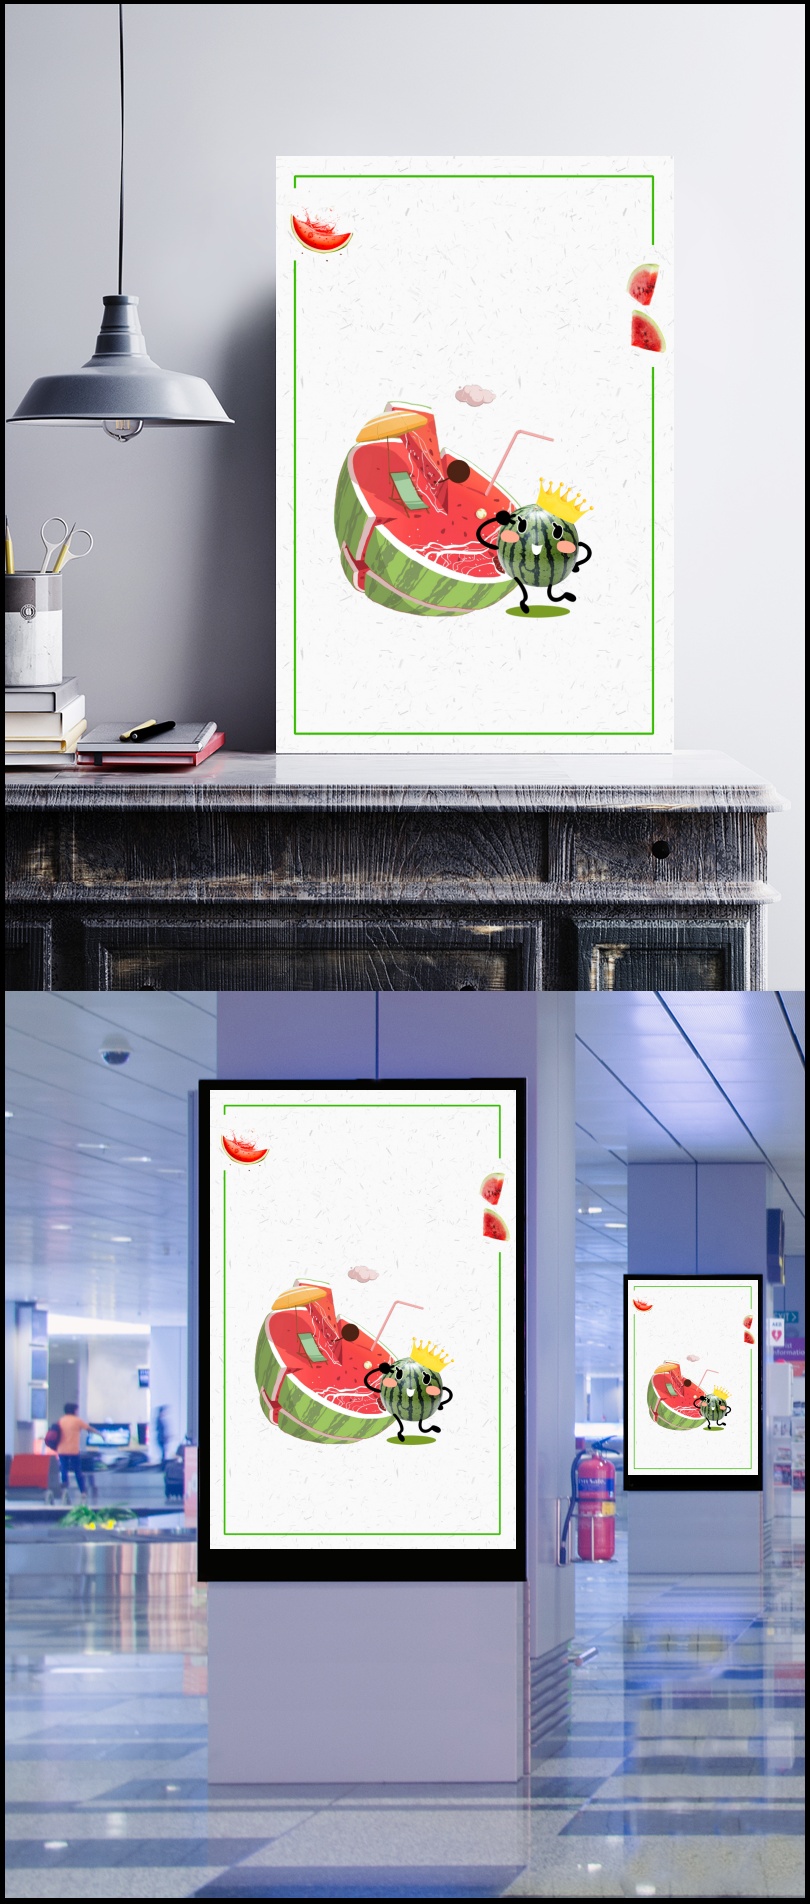 创意夏季冰爽水果果汁西瓜汁海报